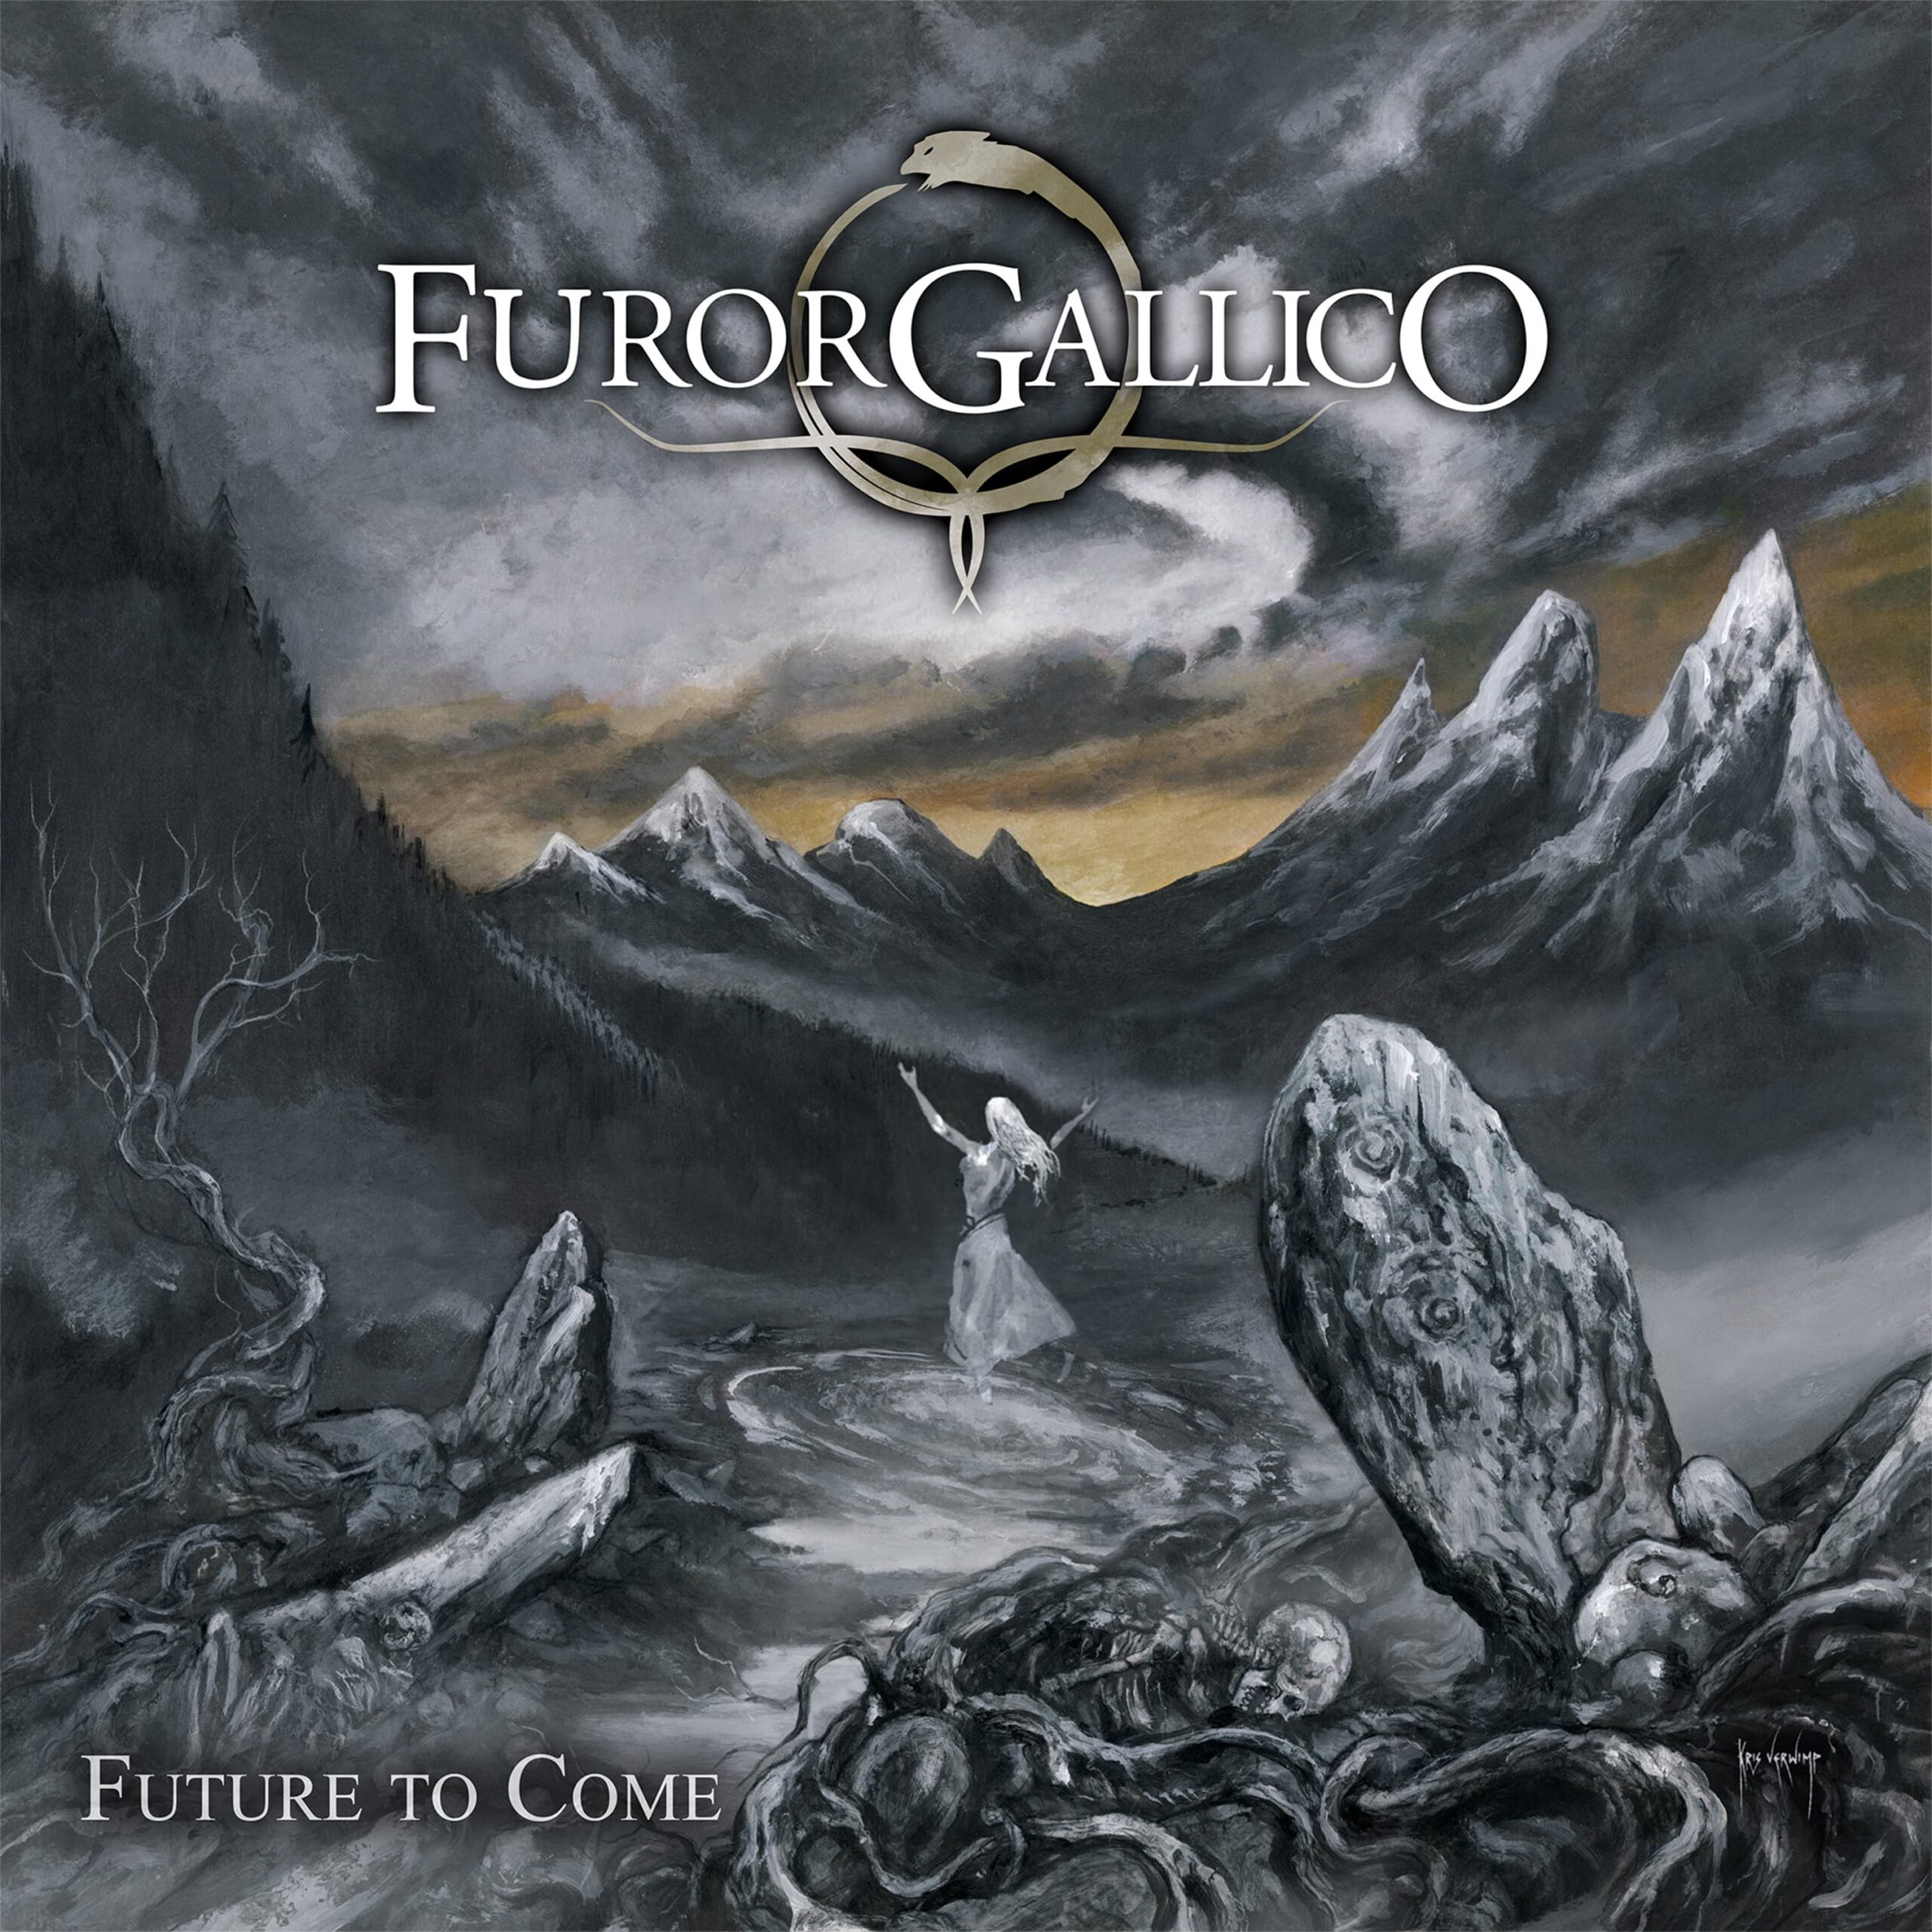 Furor Gallico releases “Birth Of The Sun” video